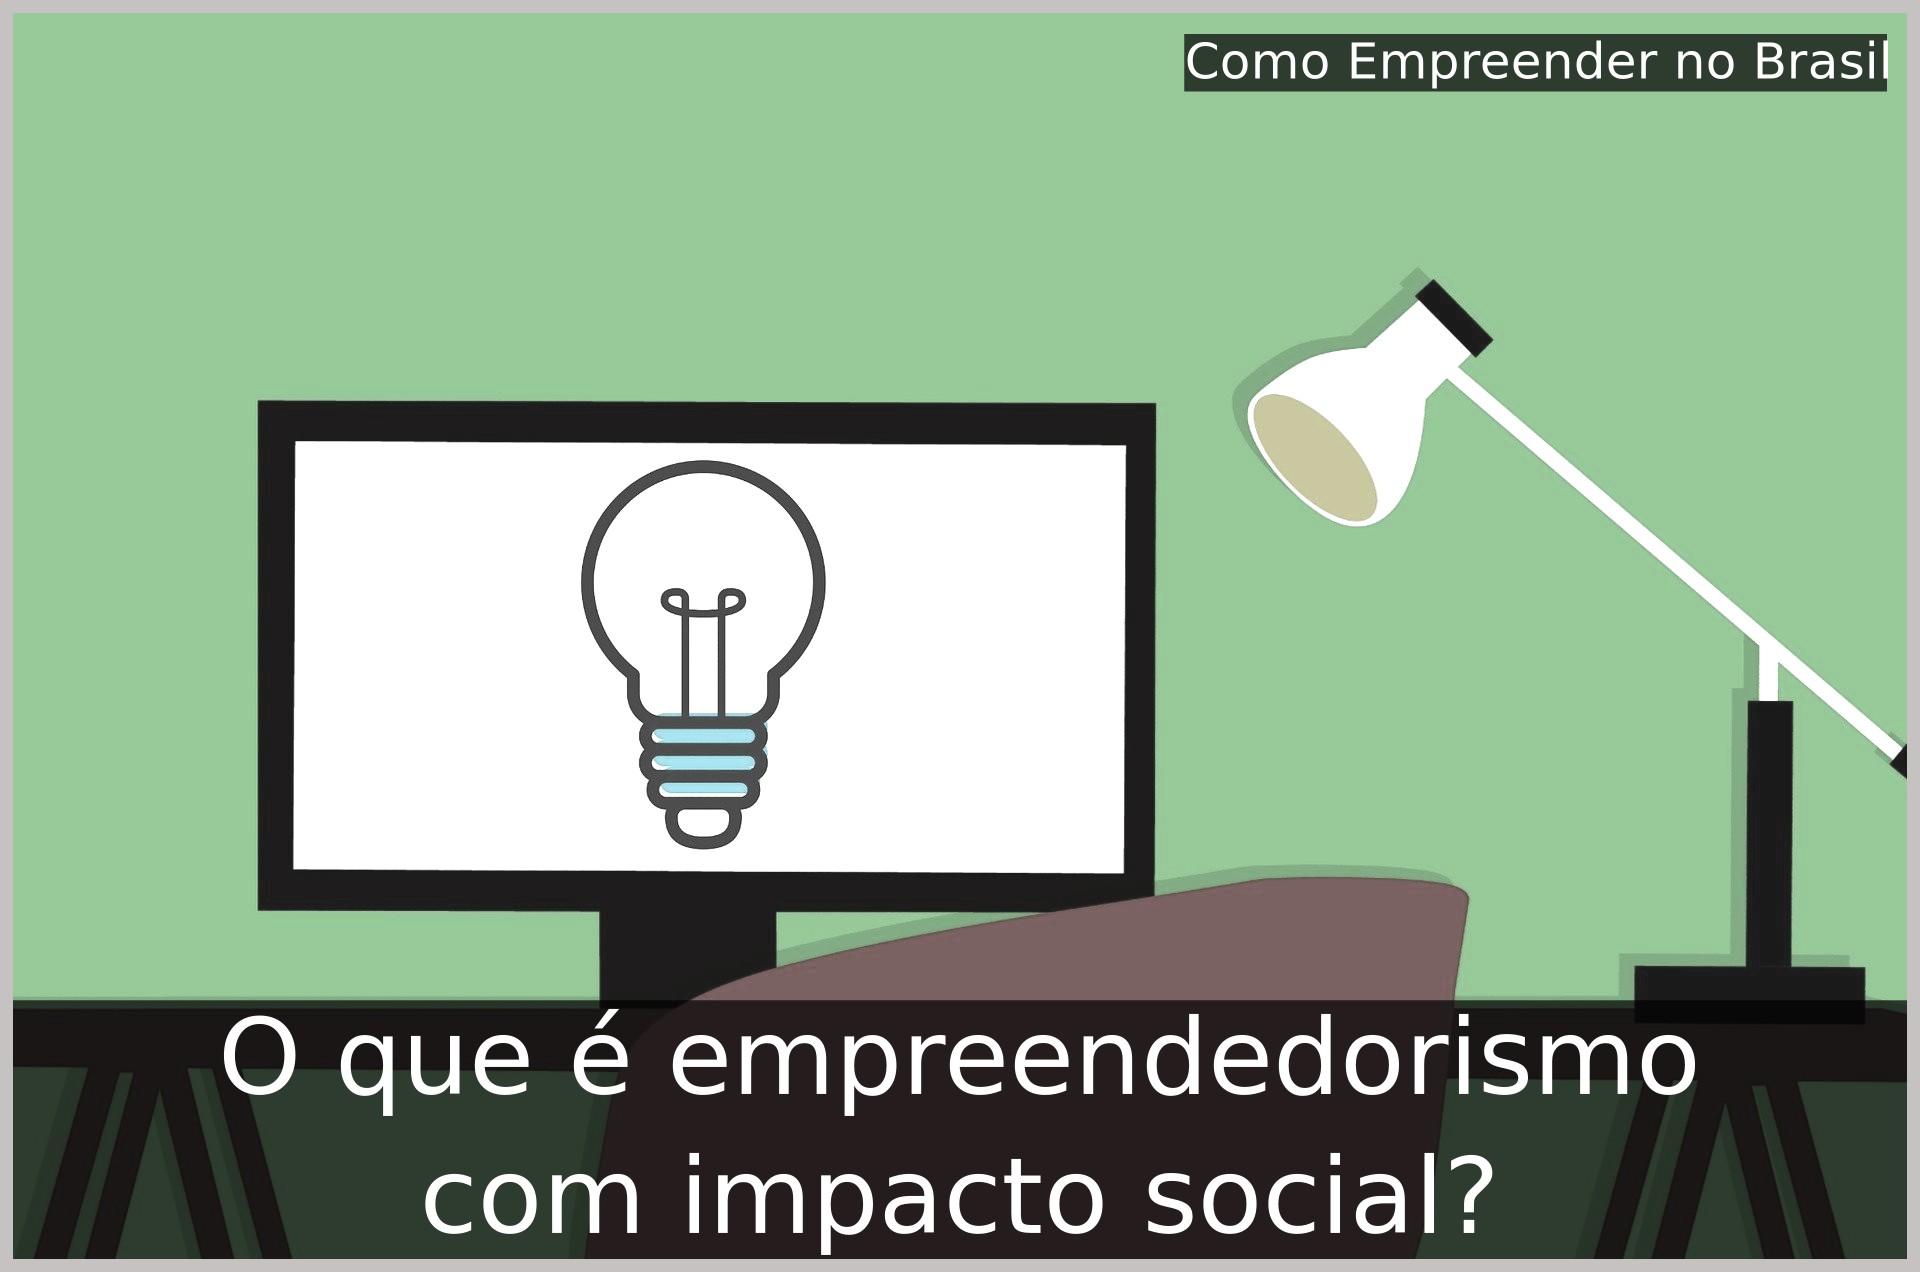 O que é empreendedorismo com impacto social?